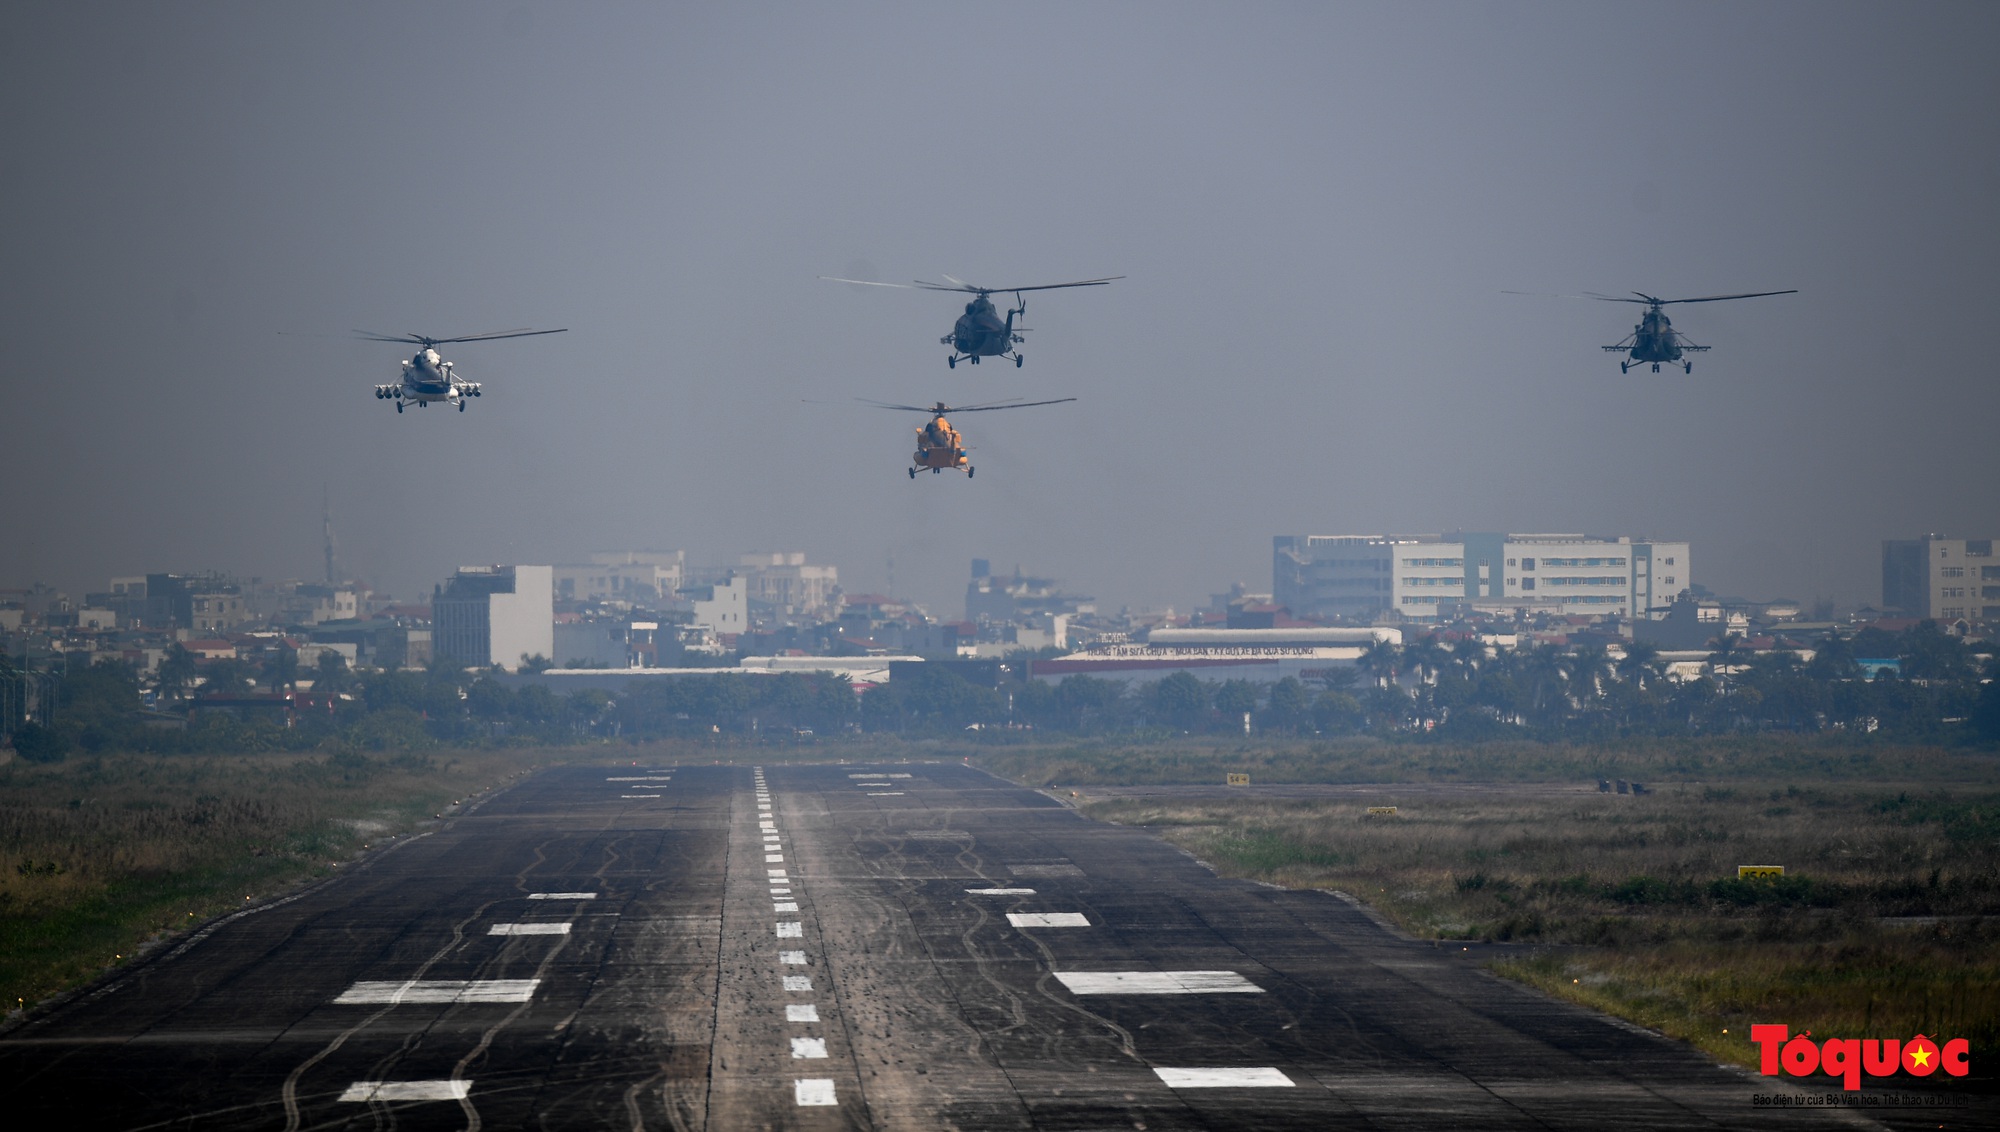 Mãn nhãn với  máy bay chiến đấu Sukhoi và trực thăng Mi thao diễn trên bầu trời Thủ đô Hà Nội - Ảnh 1.